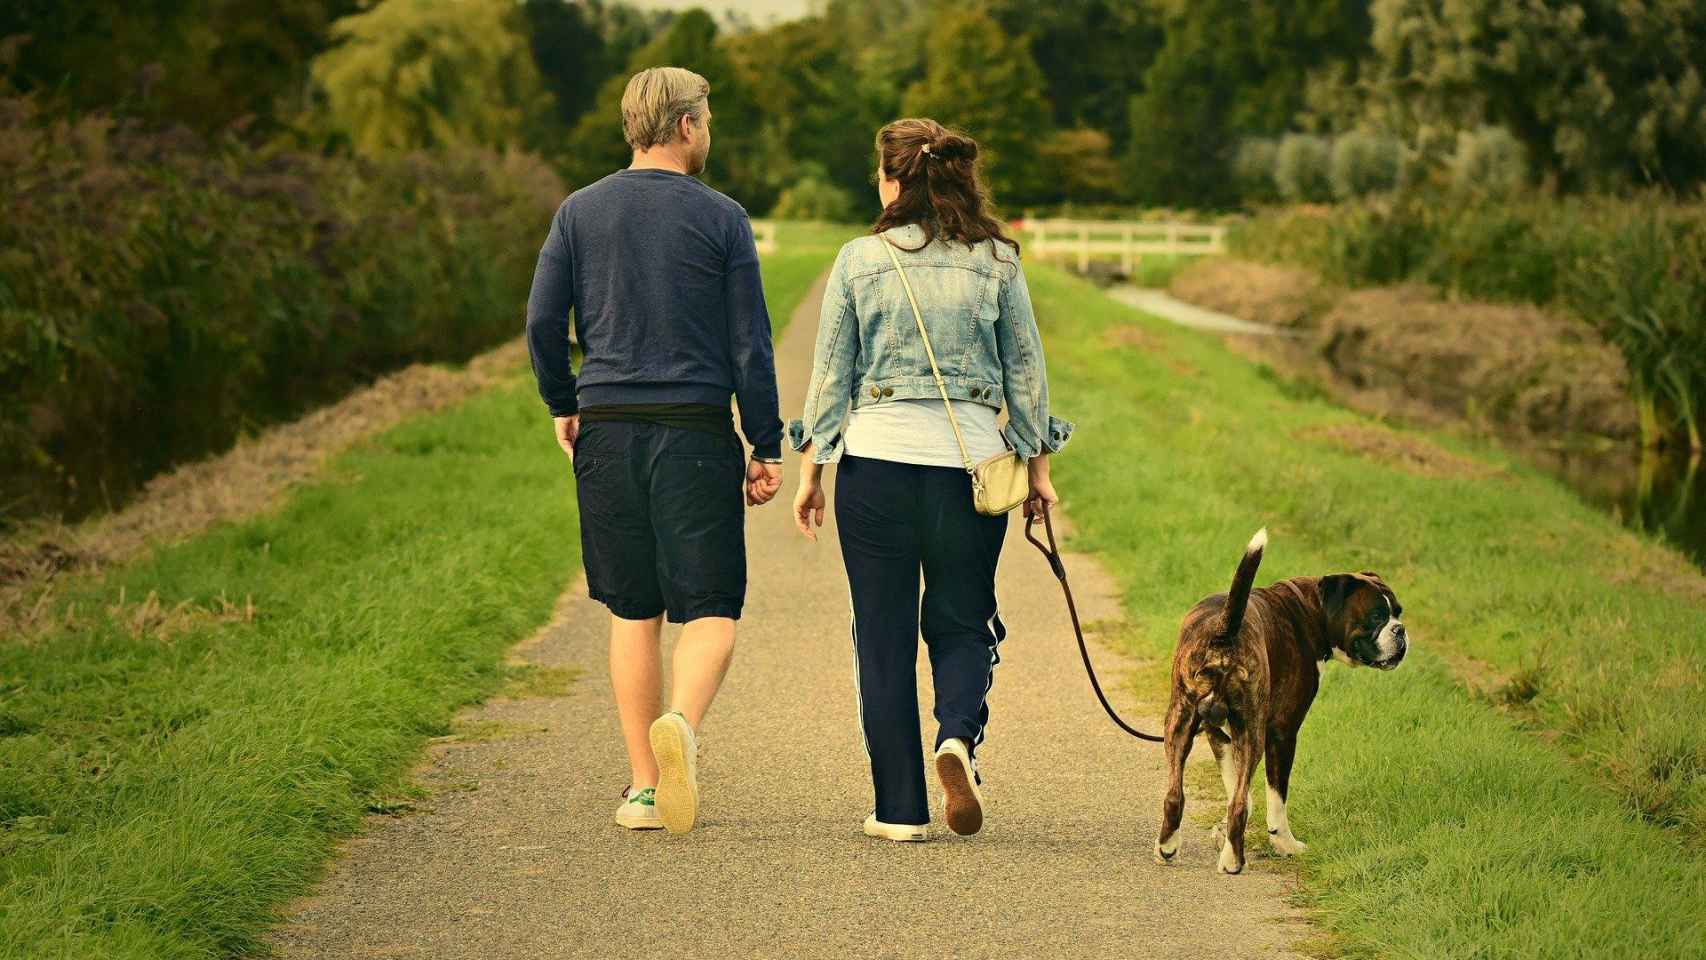 Una pareja pasea a su perro en un parque / CG